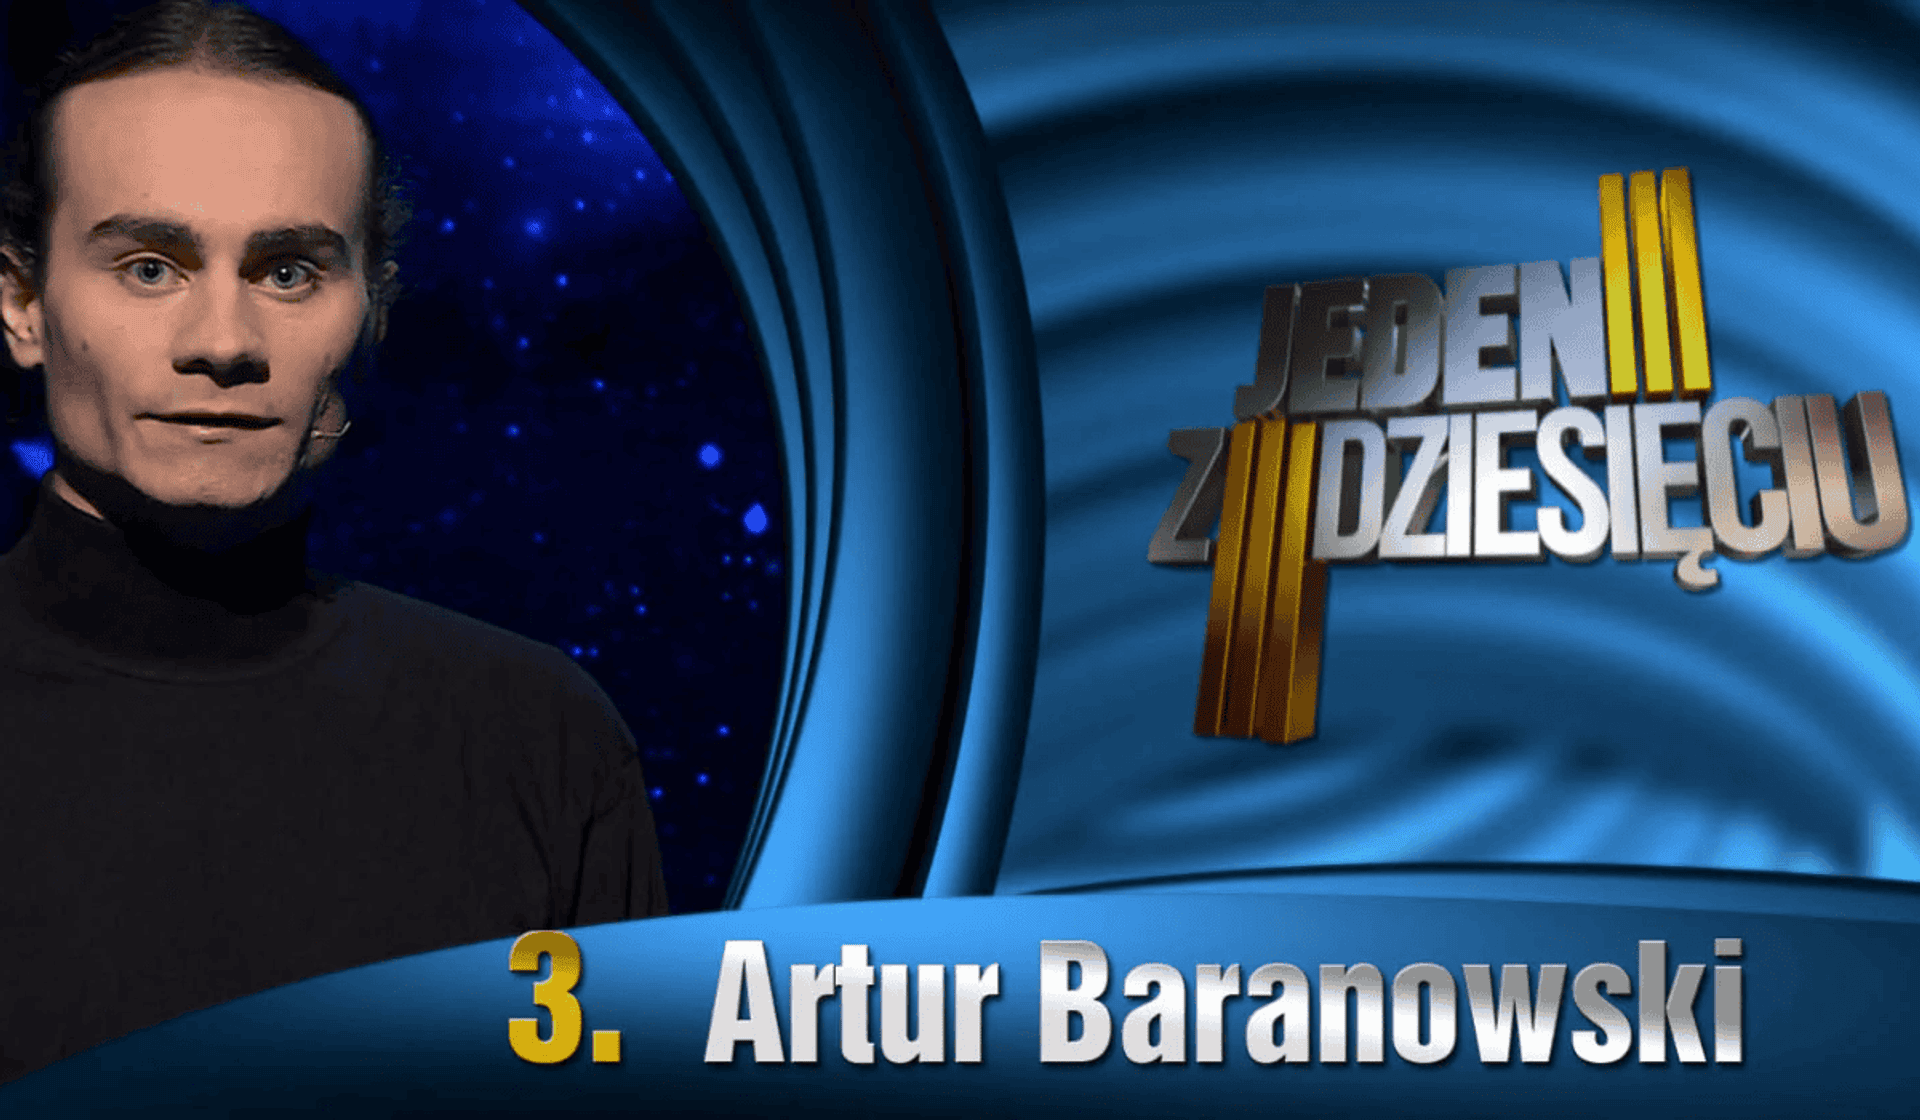 Artur Baranowski "Jeden z dziesięciu"